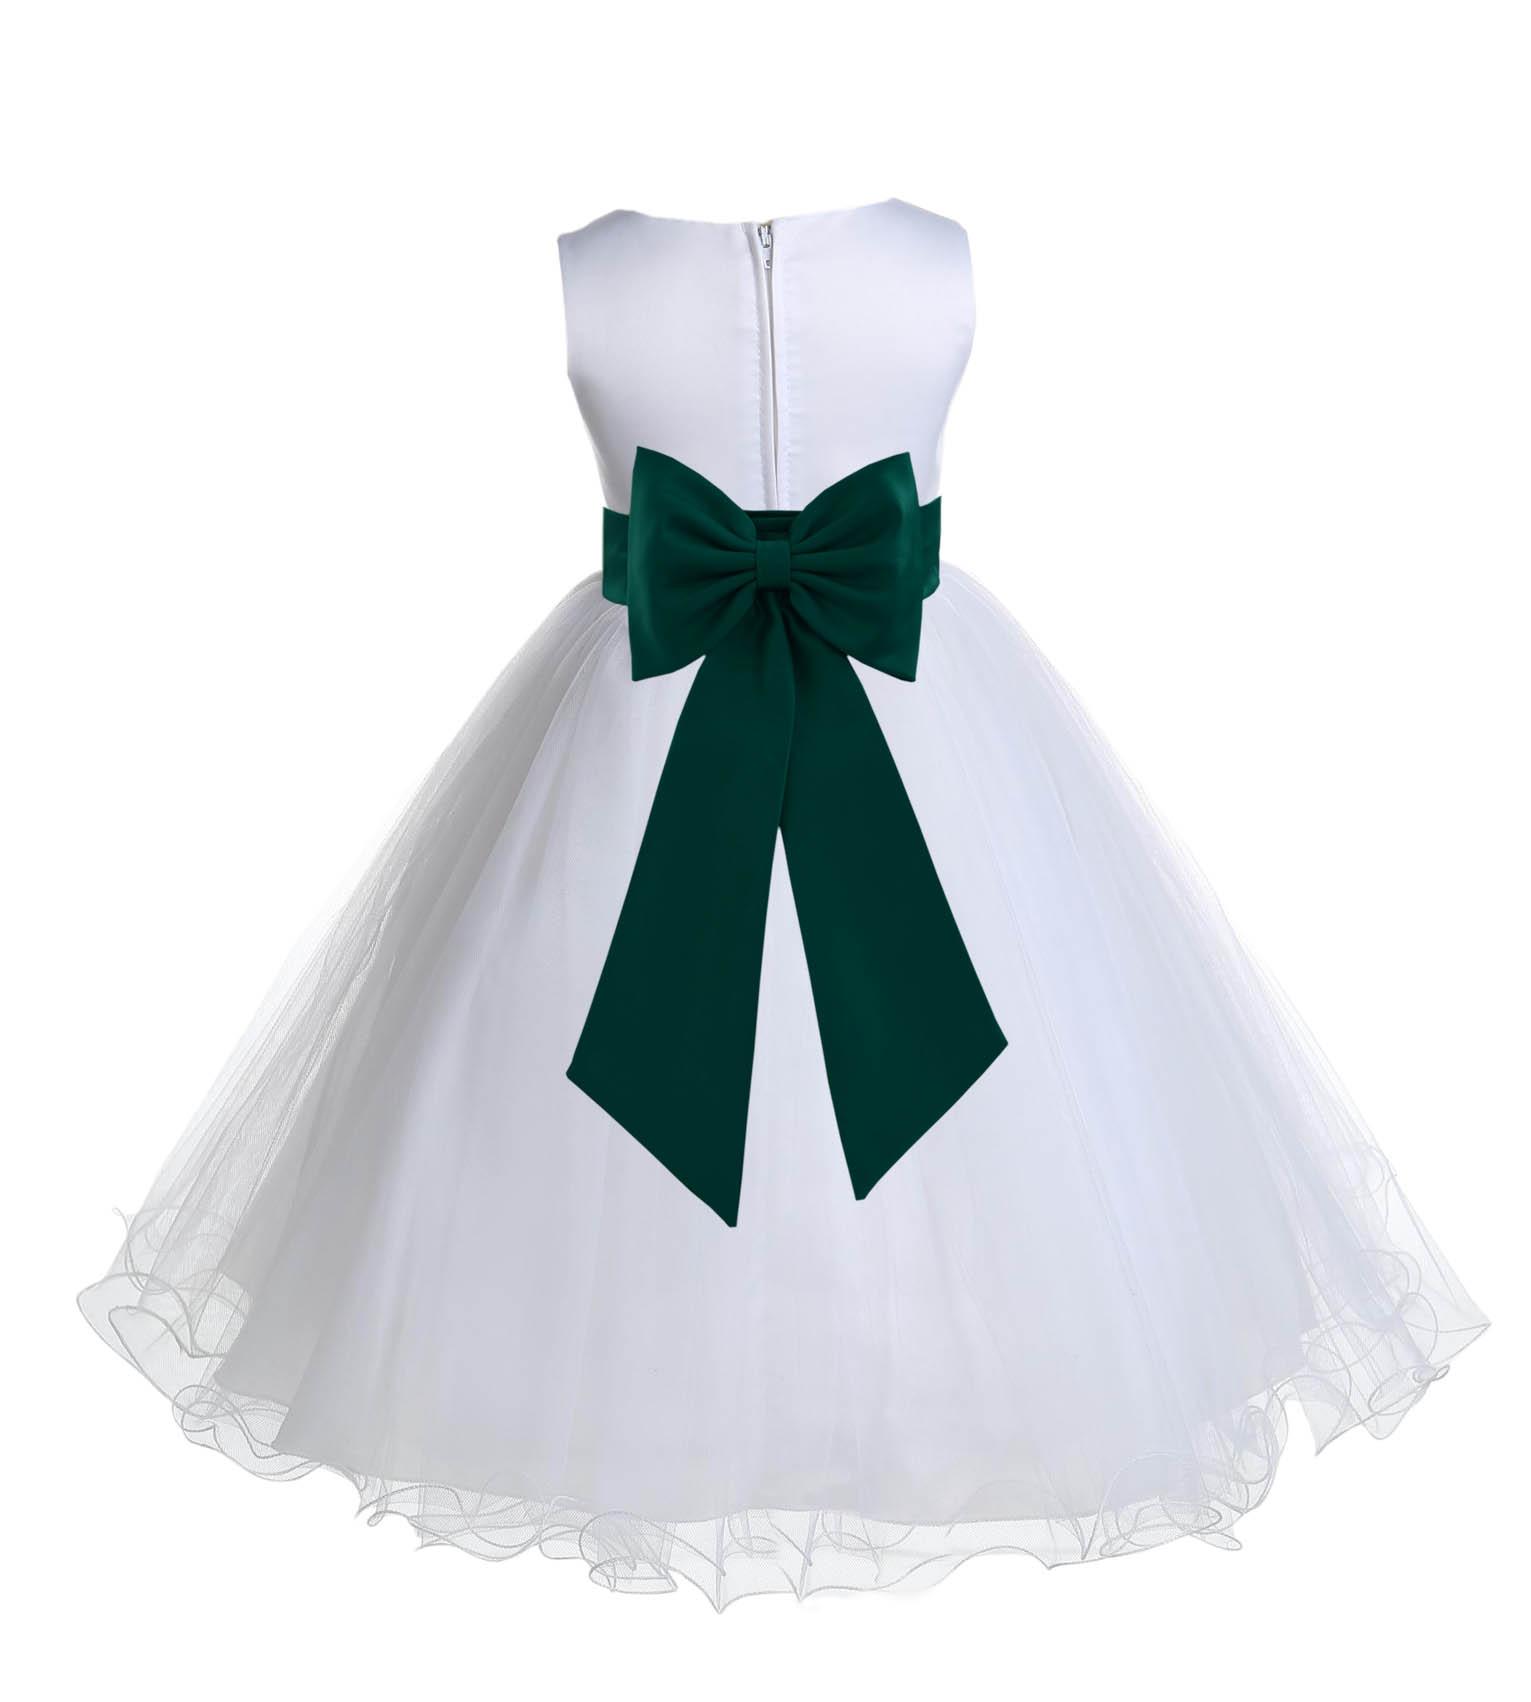 Ekidsbridal Wedding Pageant White Tulle Rattail Edge Flower Girl Dress Toddler Communion Bridal Desginer Gown 829t